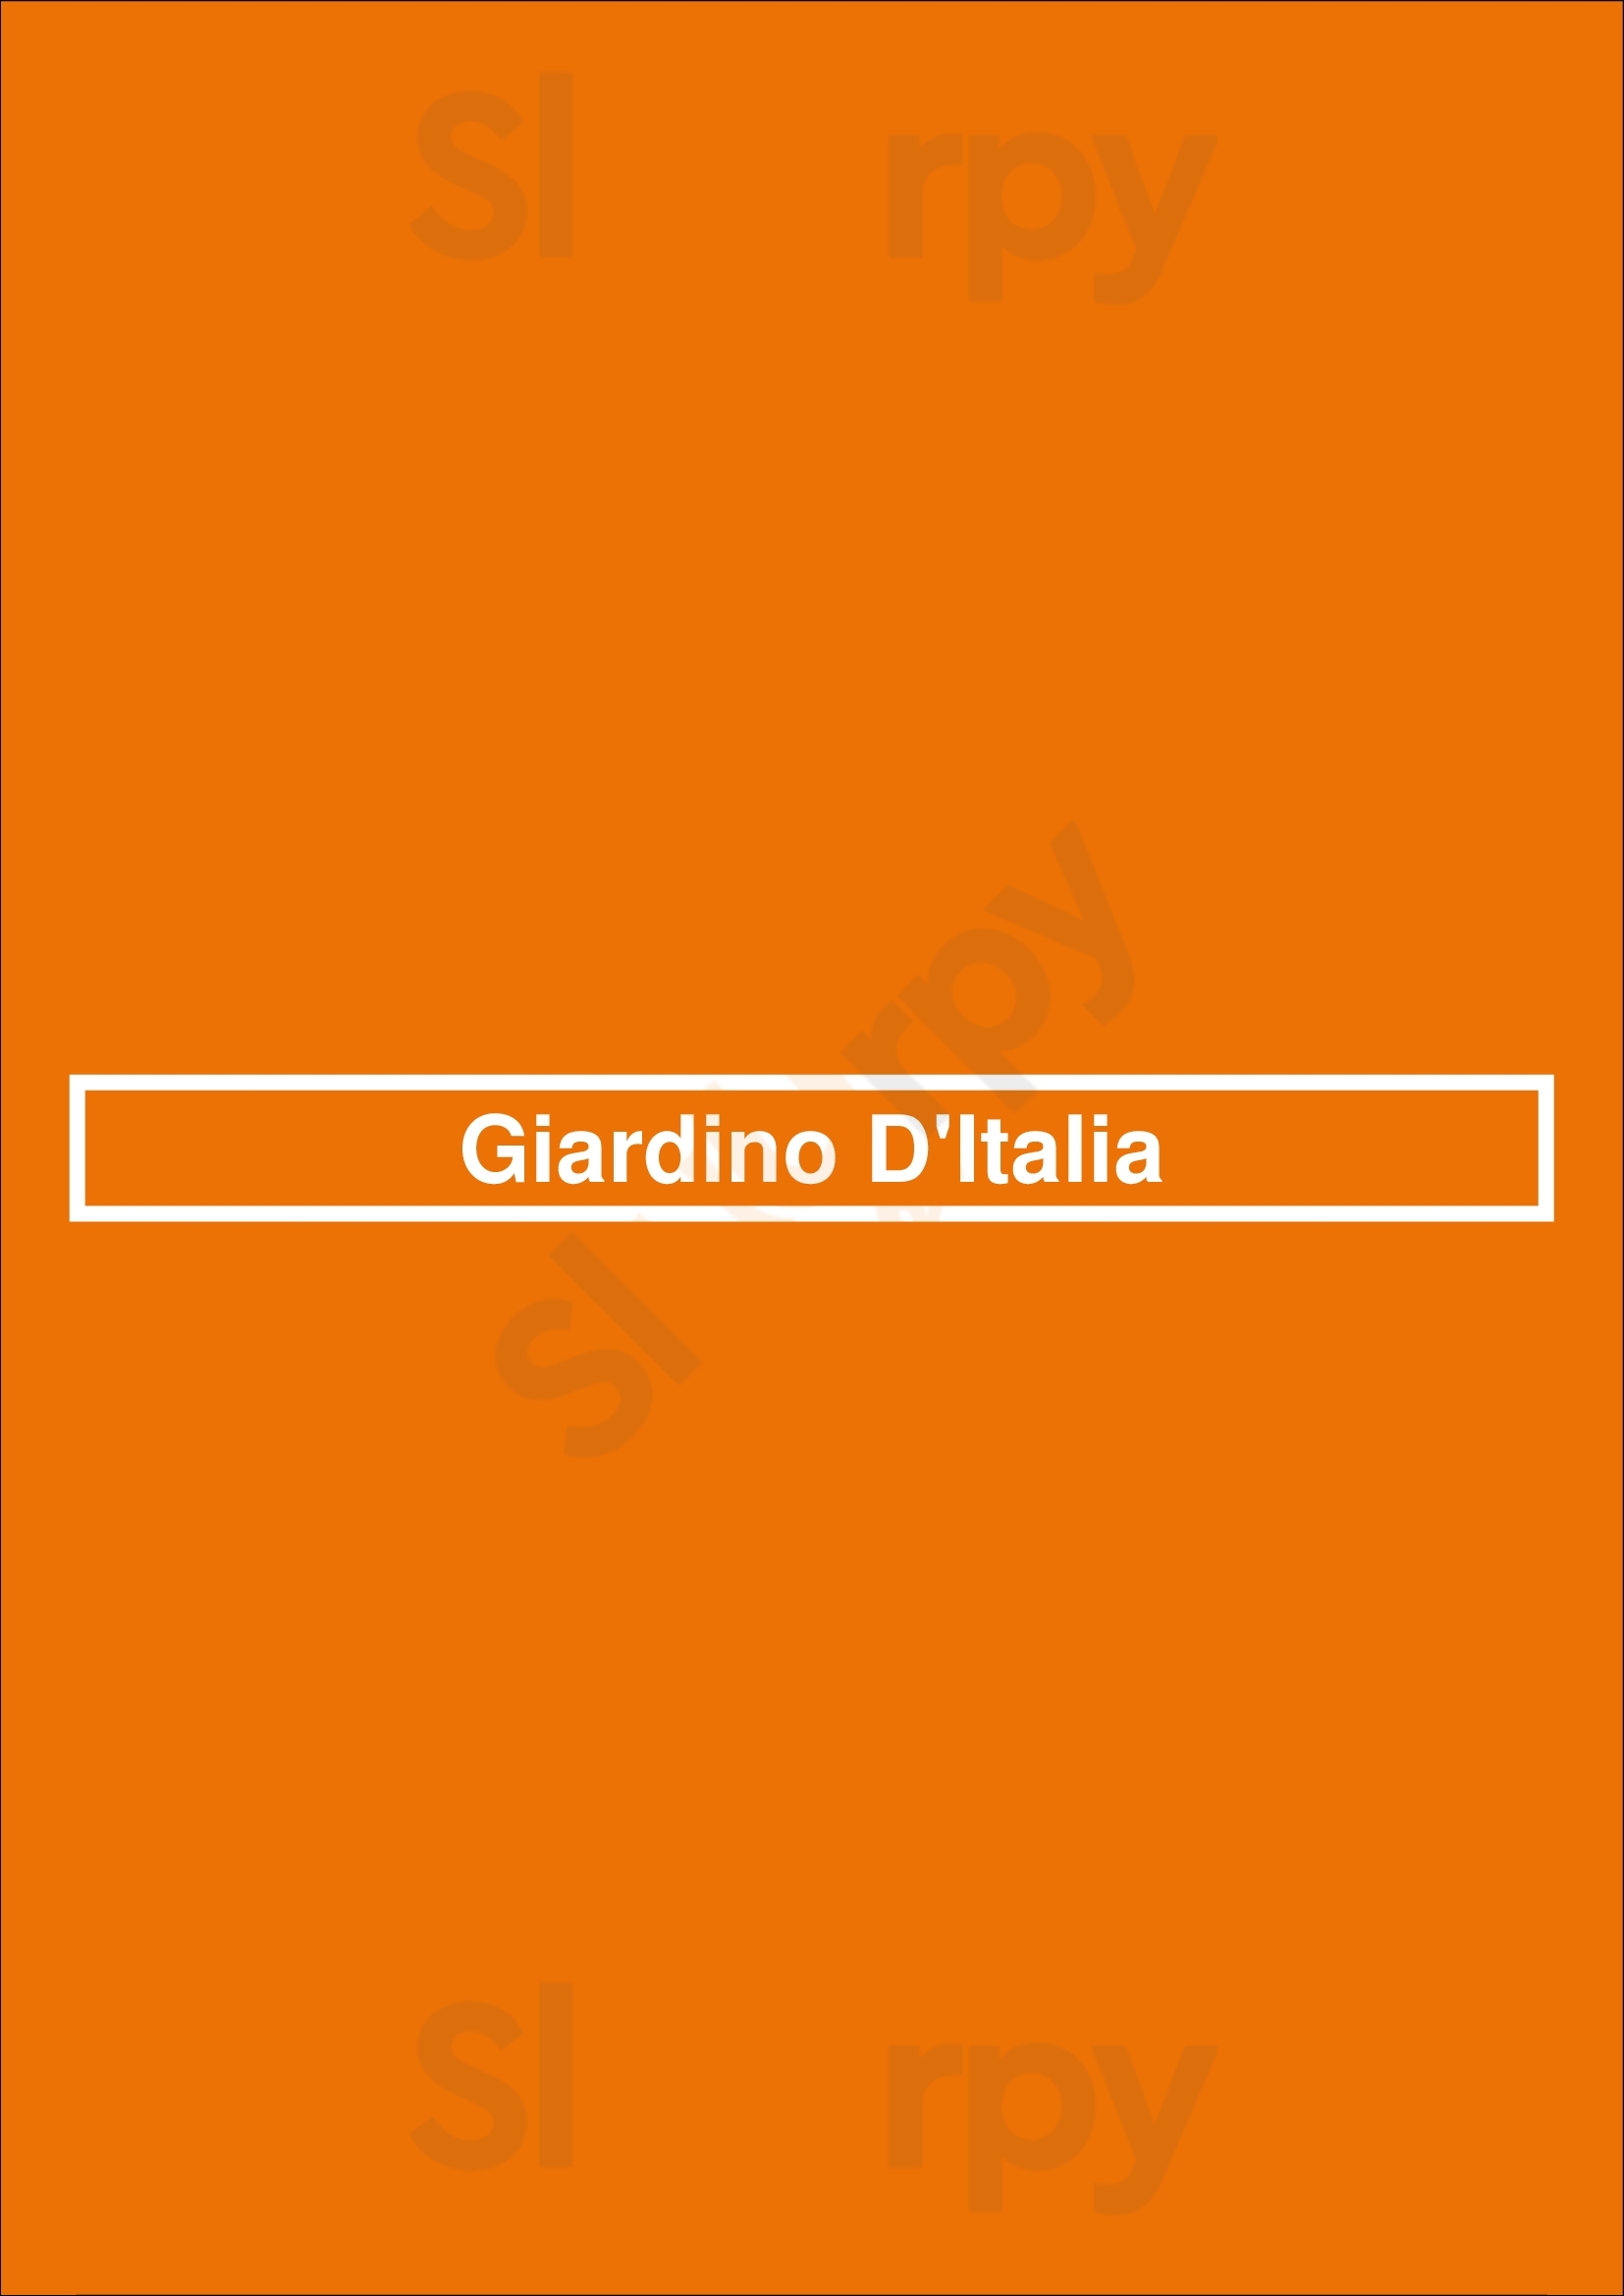 Giardino D'italia Tilburg Menu - 1